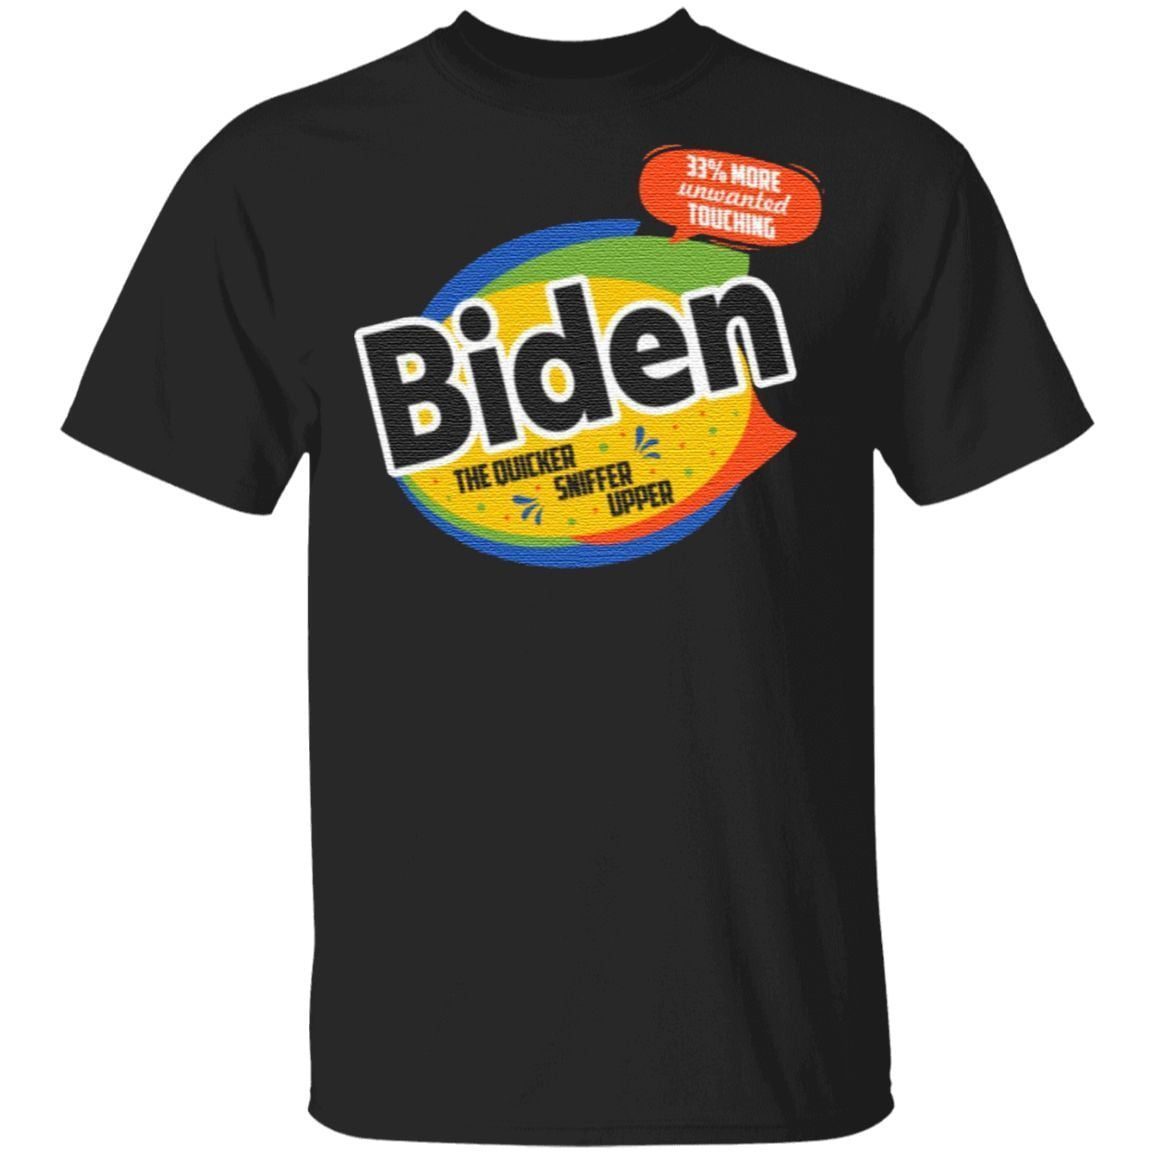 Joe Biden the Quick Sniffer Upper Anti Biden Pro Trump 2020 T-Shirt